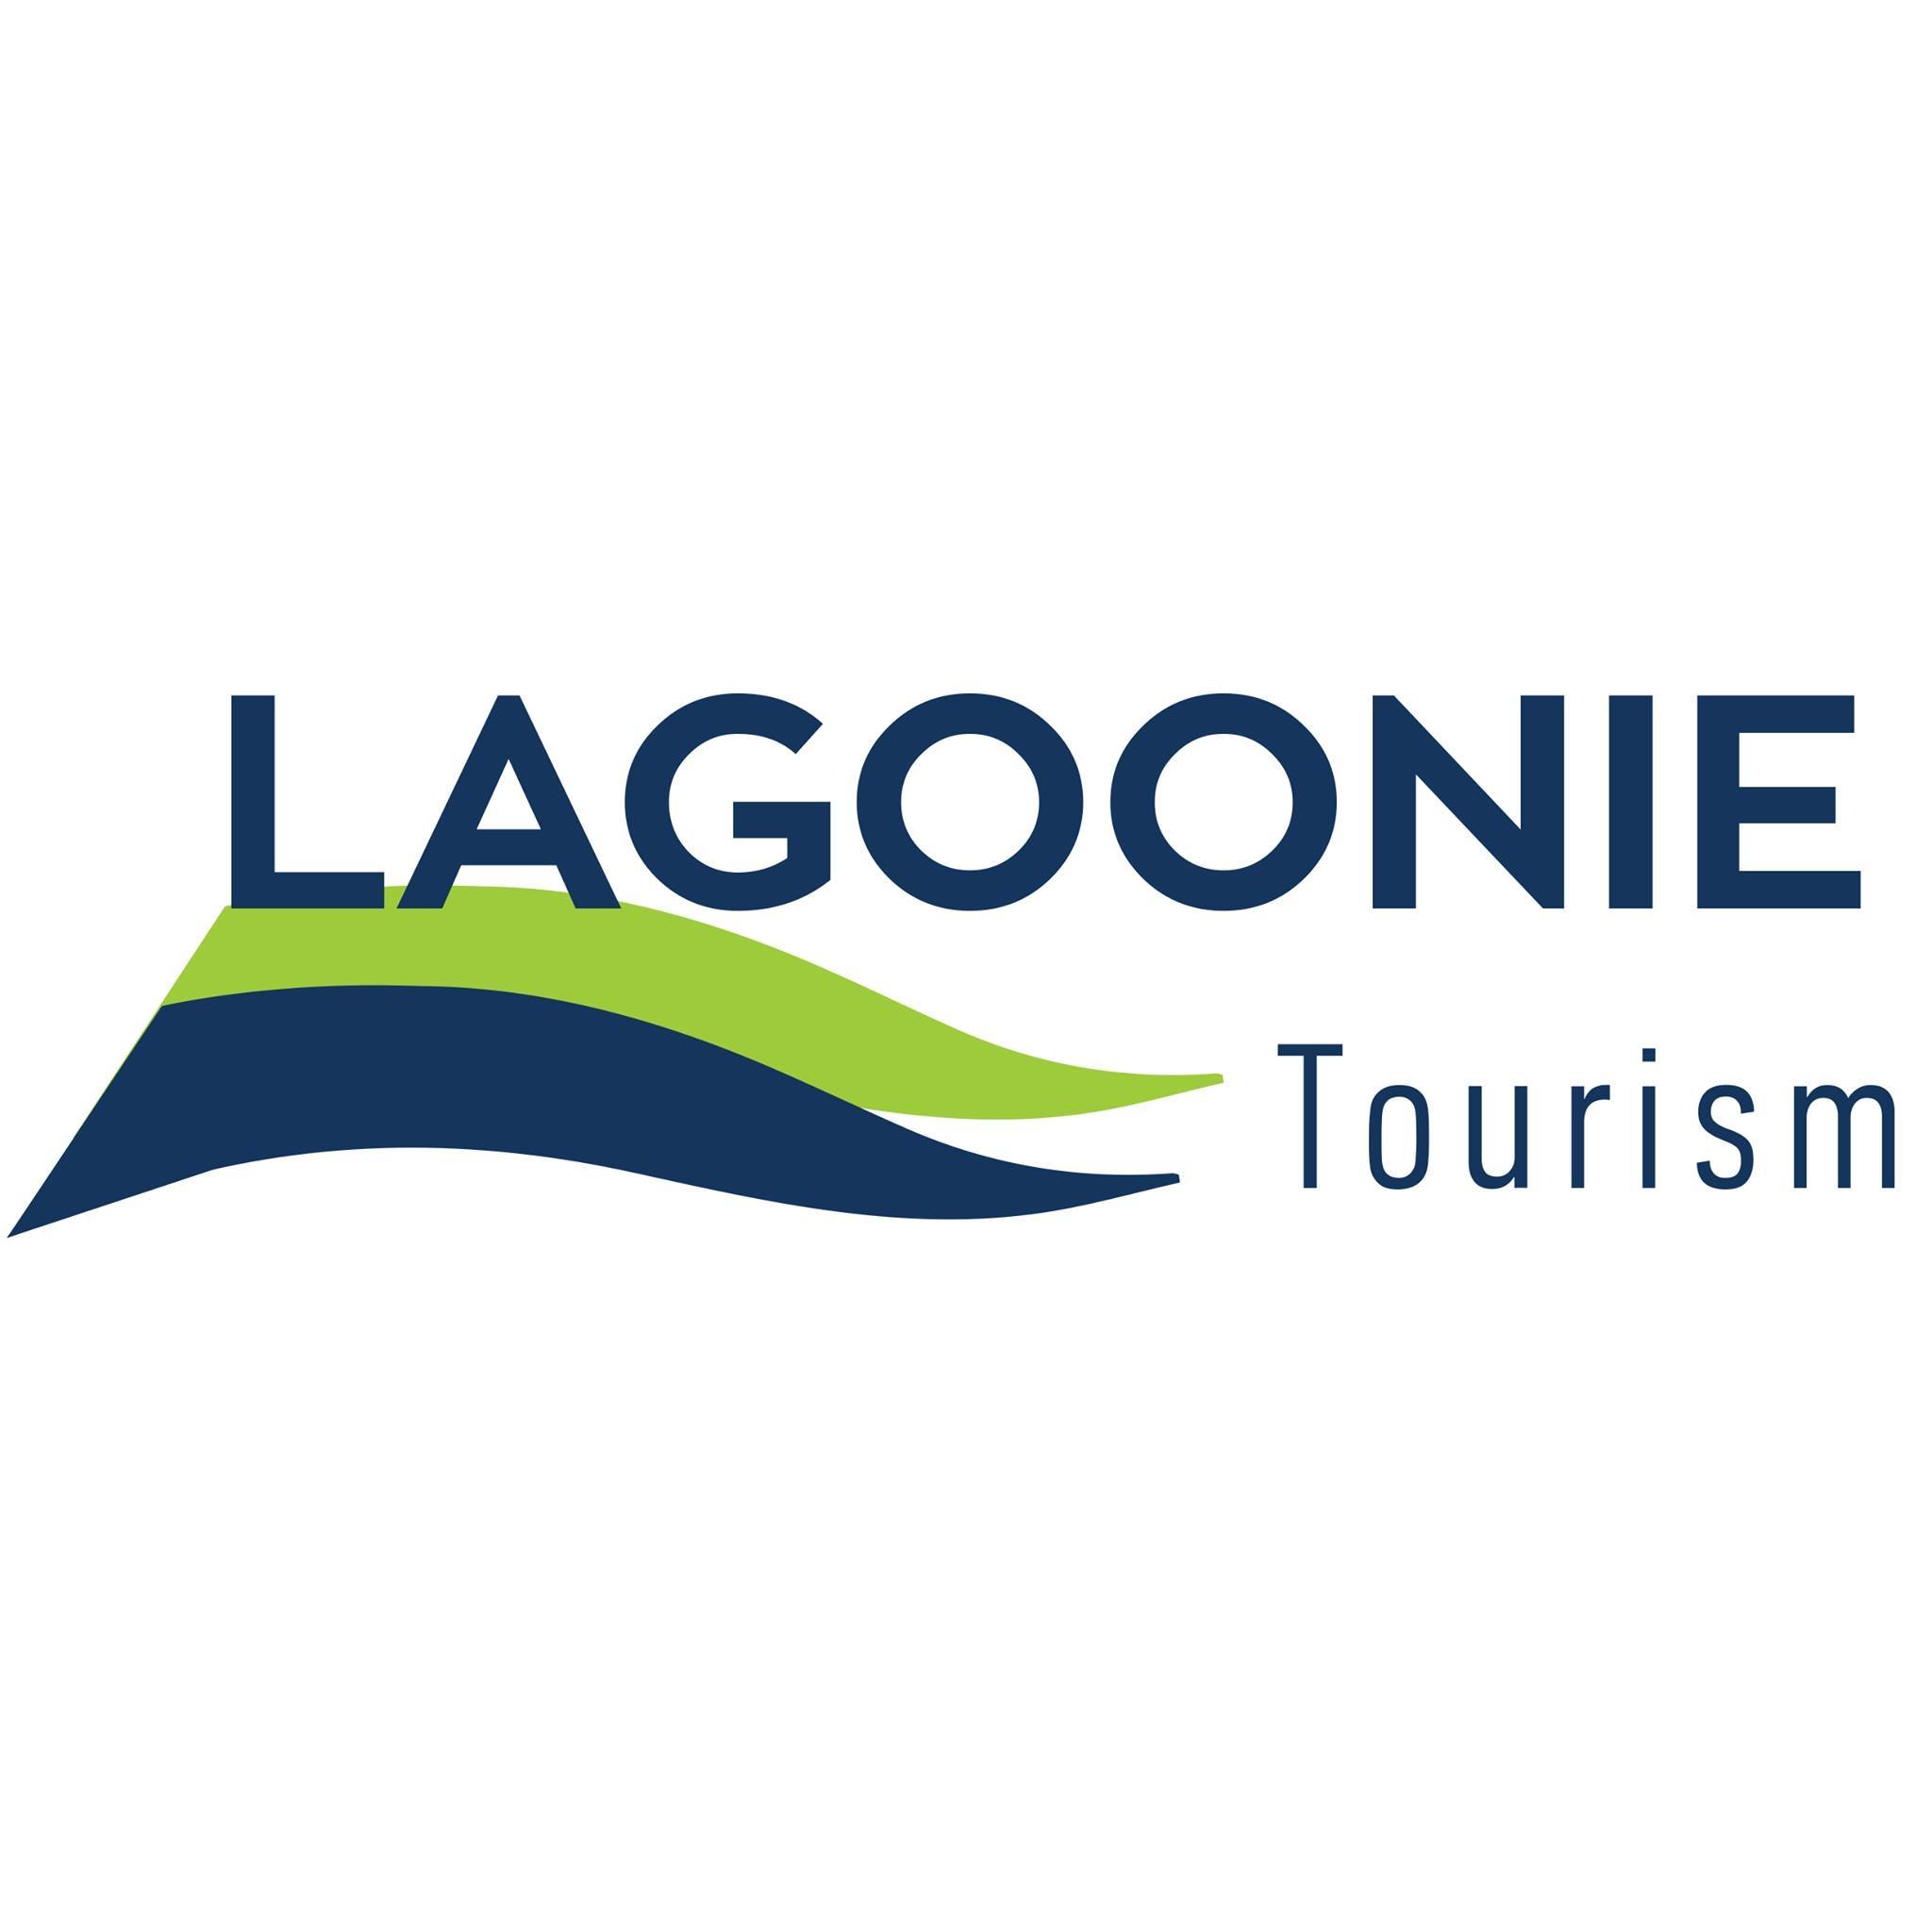 Lagoonie Tourism